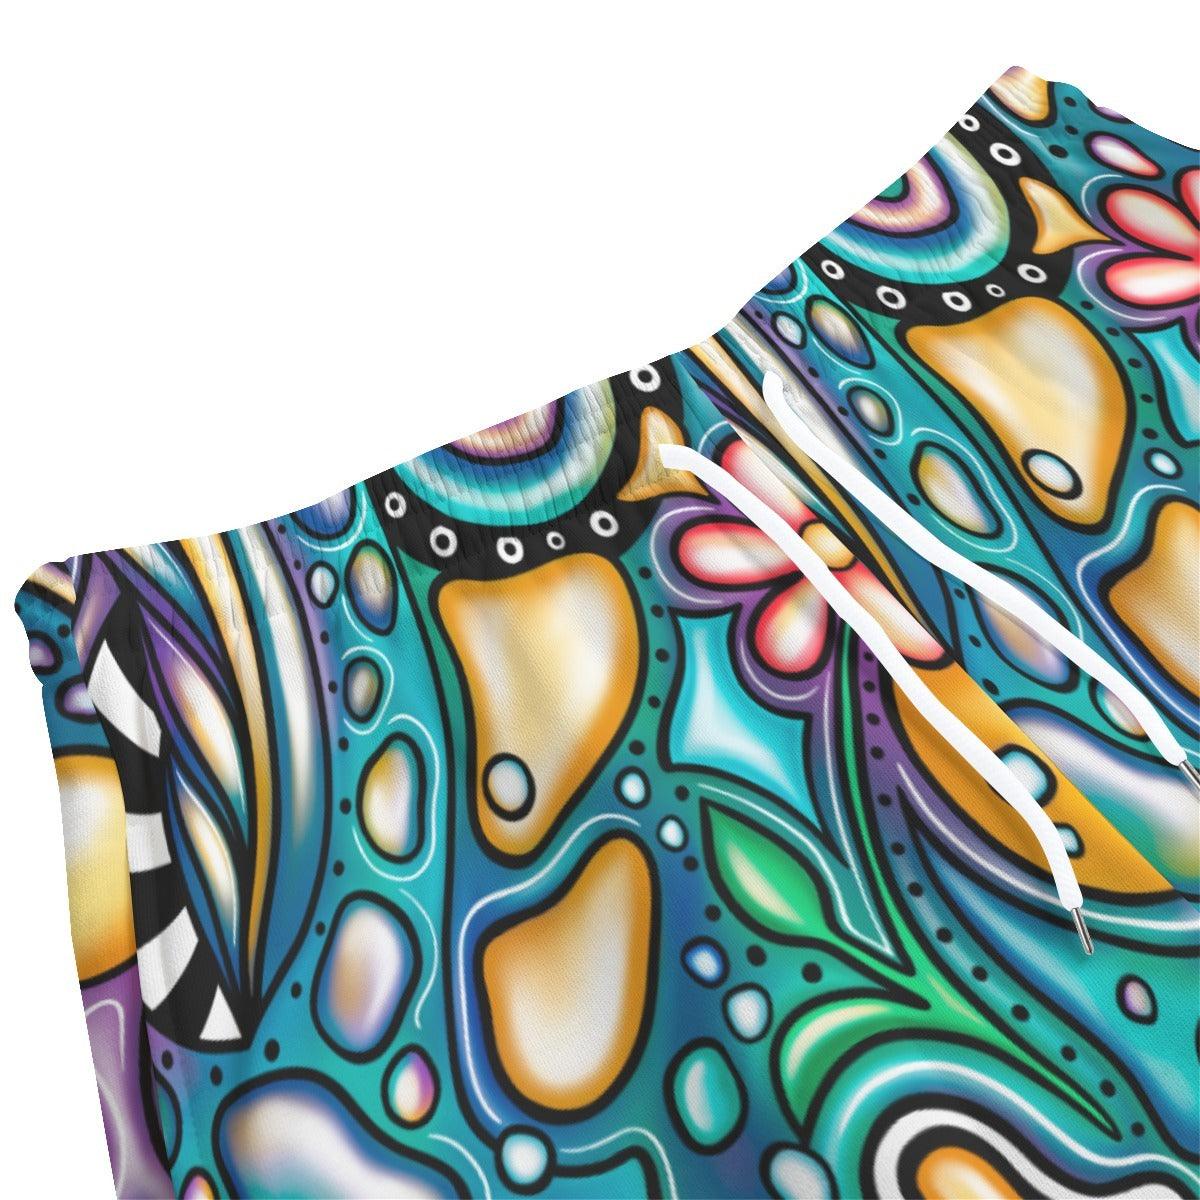 Men's Short Pants | 310GSM Cotton-Limbo - Premium  from Elementologie - Just $37.99! Shop now at Elementologie